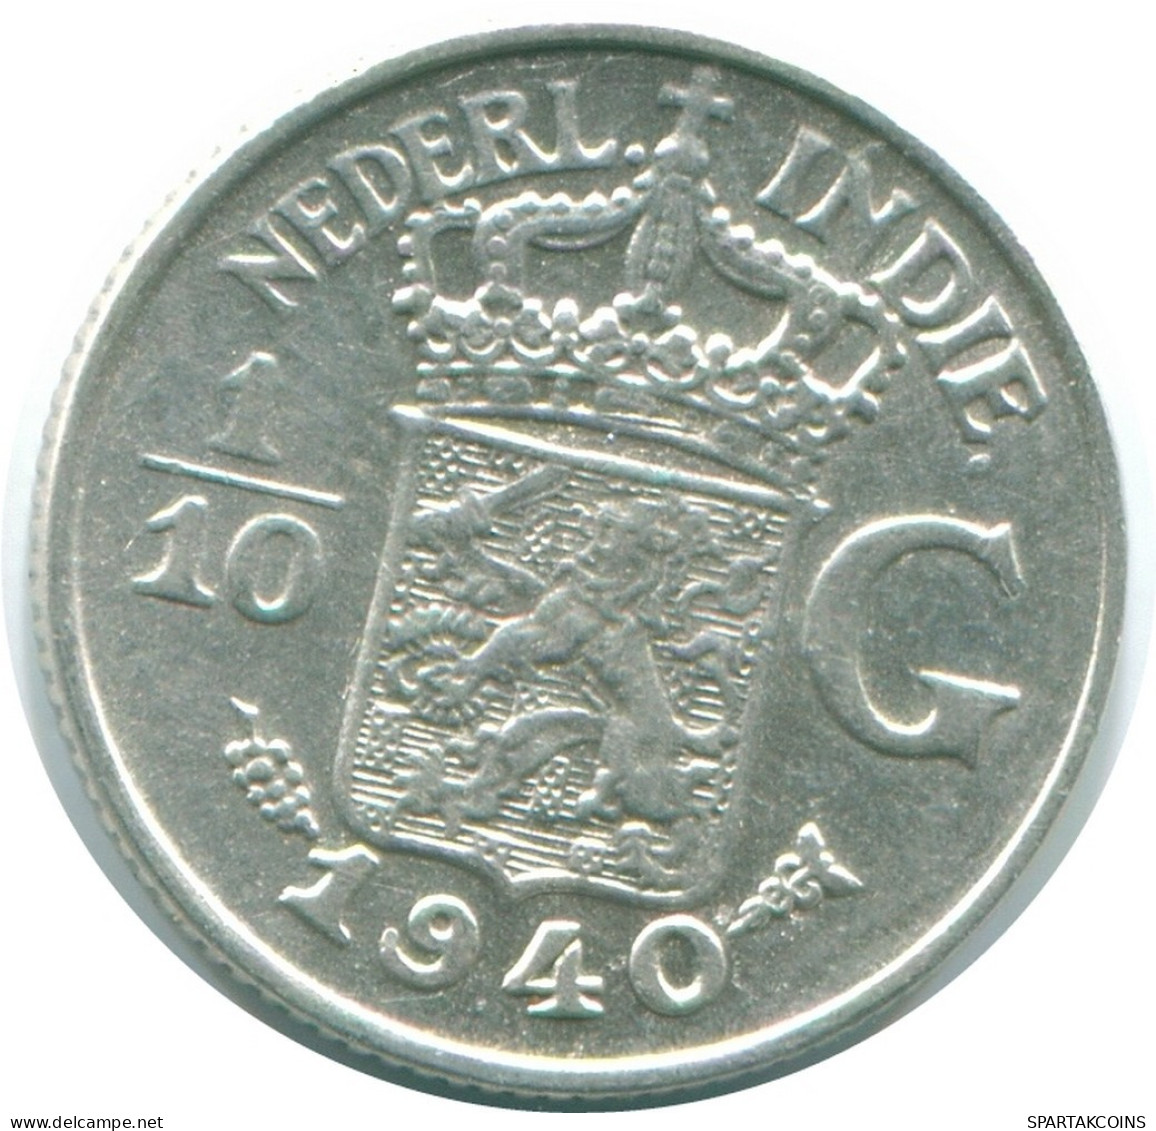 1/10 GULDEN 1940 NETHERLANDS EAST INDIES SILVER Colonial Coin #NL13530.3.U.A - Niederländisch-Indien